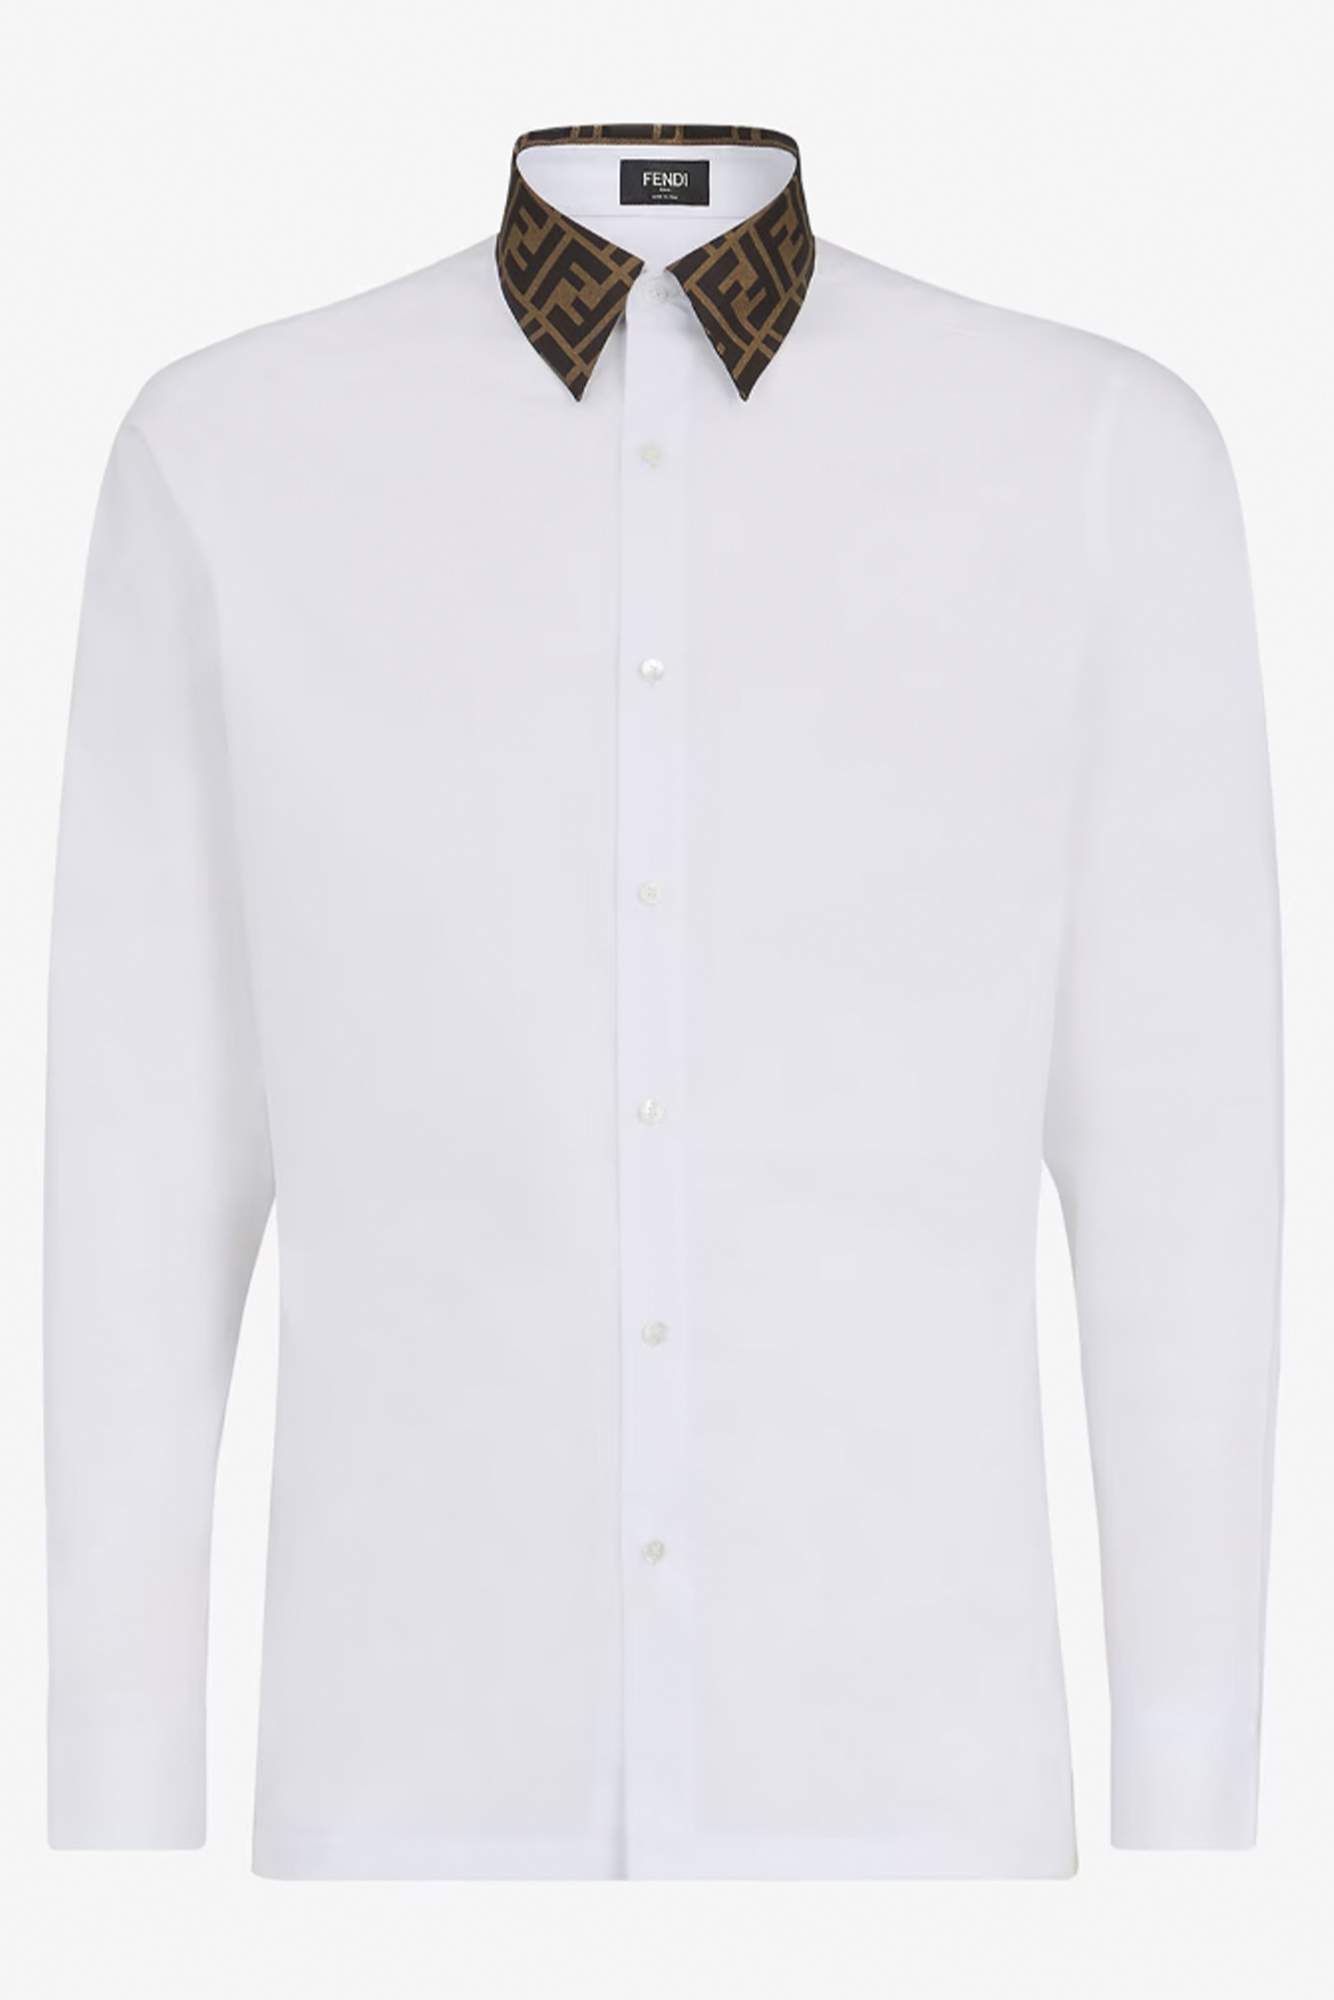 Fendi: White Cotton Shirt